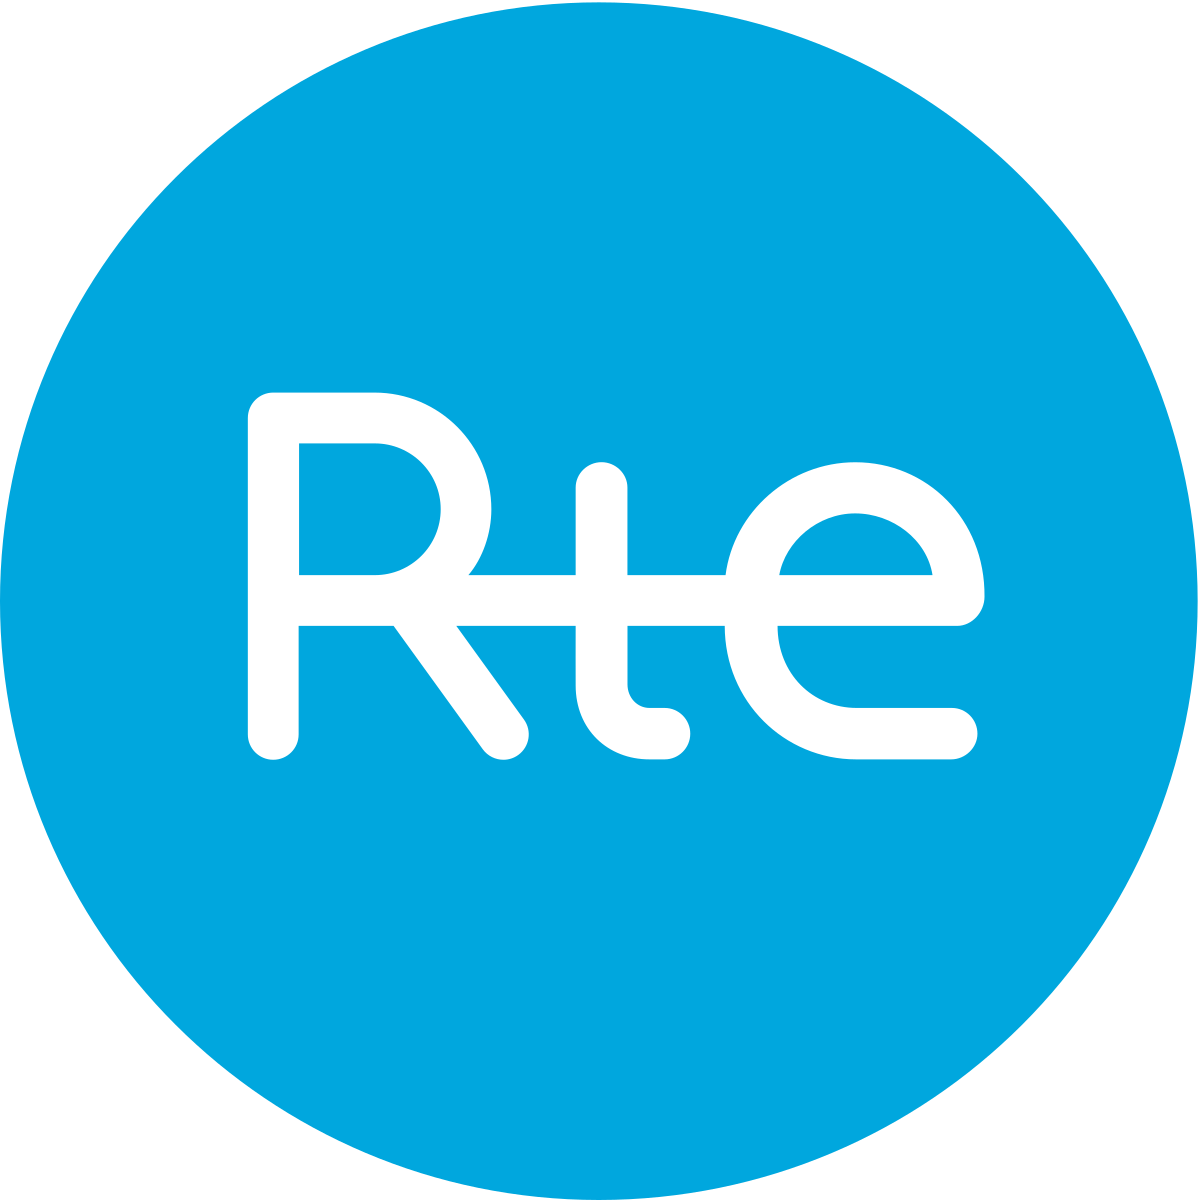 Patrick Torre, RTE logo